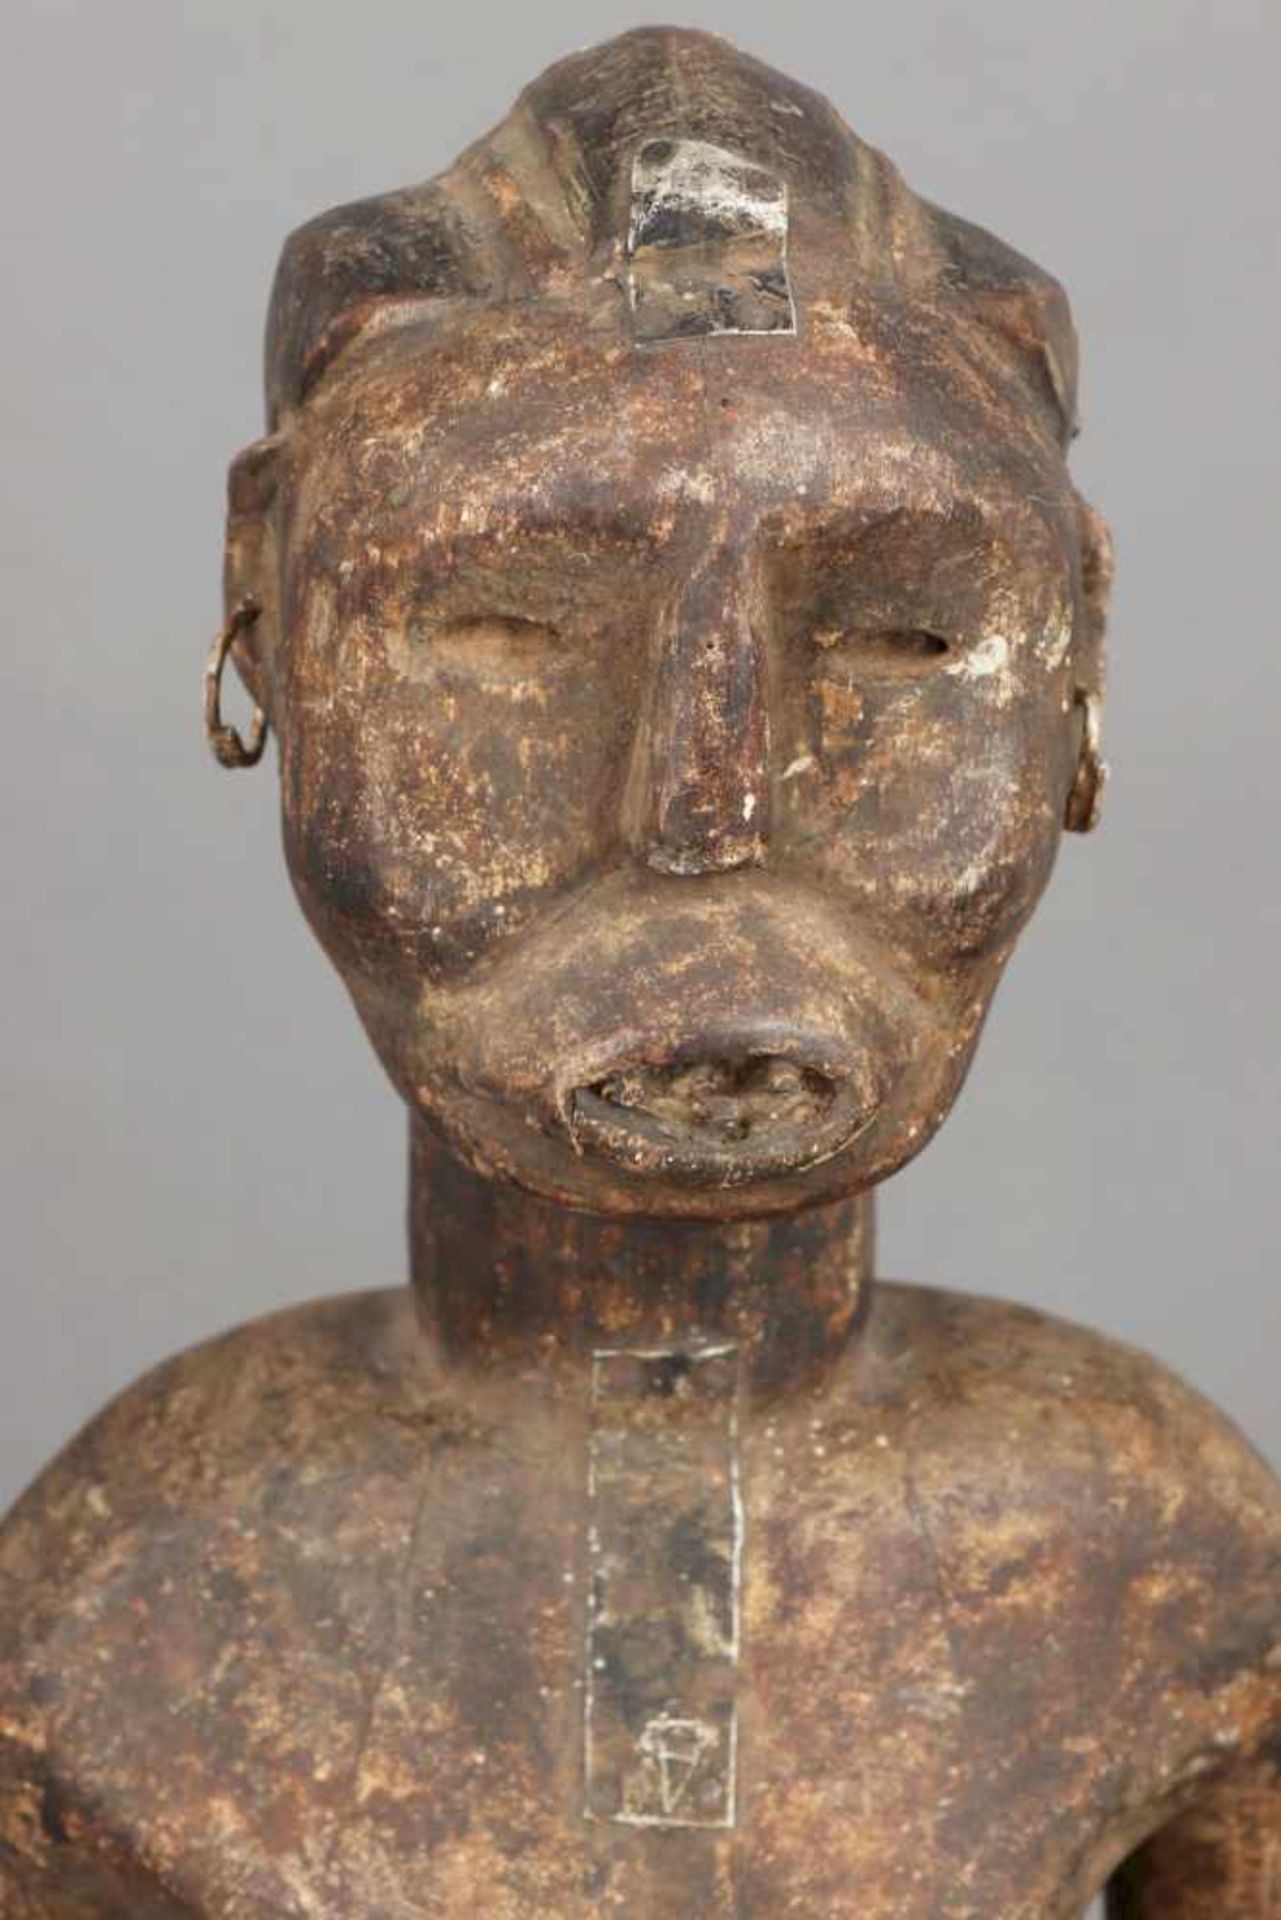 Afrikanische Ritual-/Ahnenfigur Holz, geschnitzt und dunkel patiniert, Metallbeschläge, stehende - Image 4 of 4